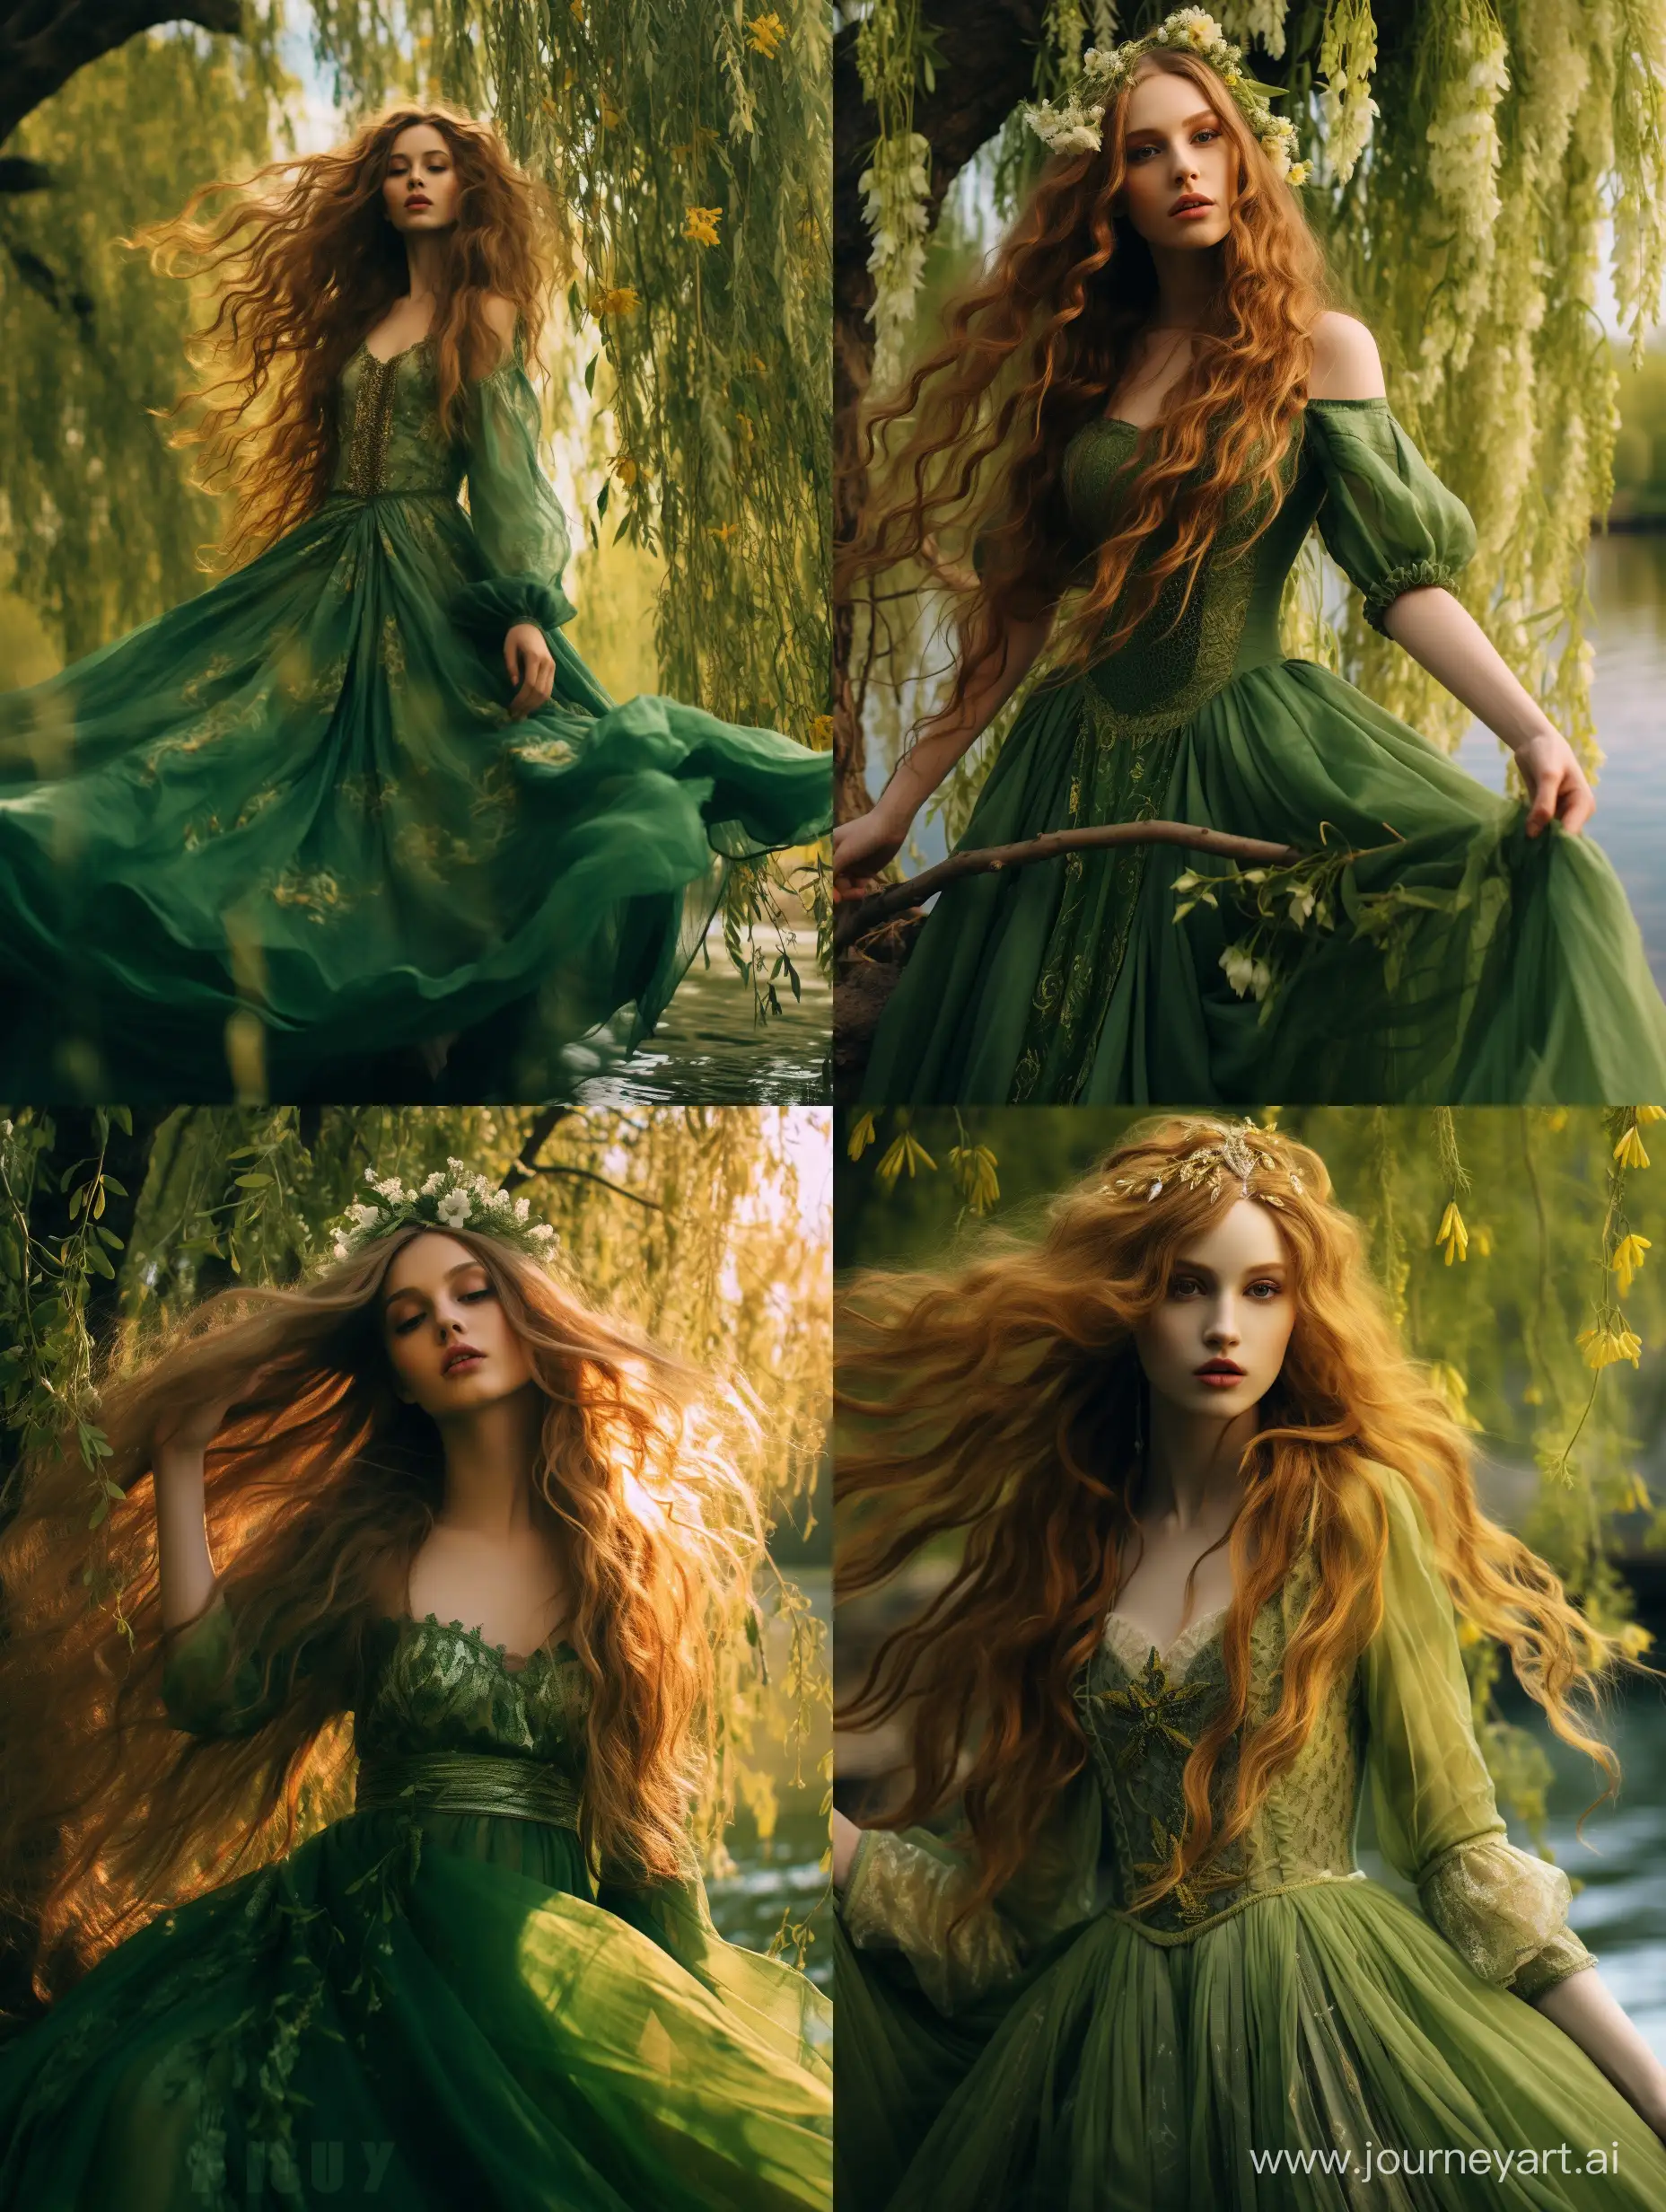 Королева-весна, невероятно красивая девушка в полный рост, с зелеными длинными волосами, на голове венок из вербы, в платье из зеленых листьев в весеннем саду, красивый пейзаж на фоне, синее небо, ручей, продолжение платья из зеленых листьев, завихряются у подола платья, неоновые переливы, высокое разрешение, эстетично, красиво, яркое освещение, фотореализм